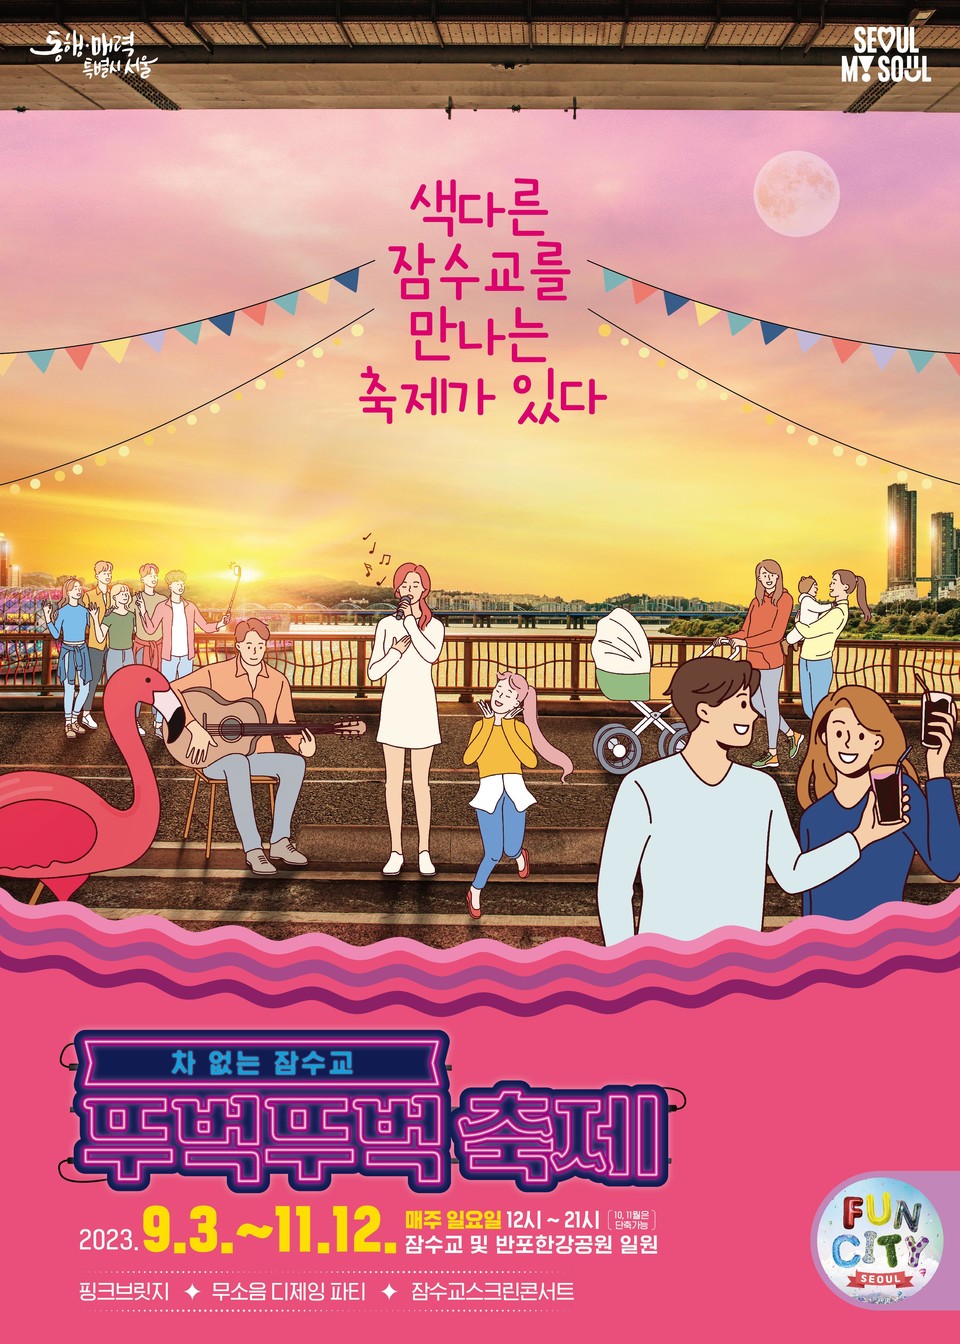 차 없는 잠수교 뚜벅뚜벅 축제 포스터 및 스토리 in 서울